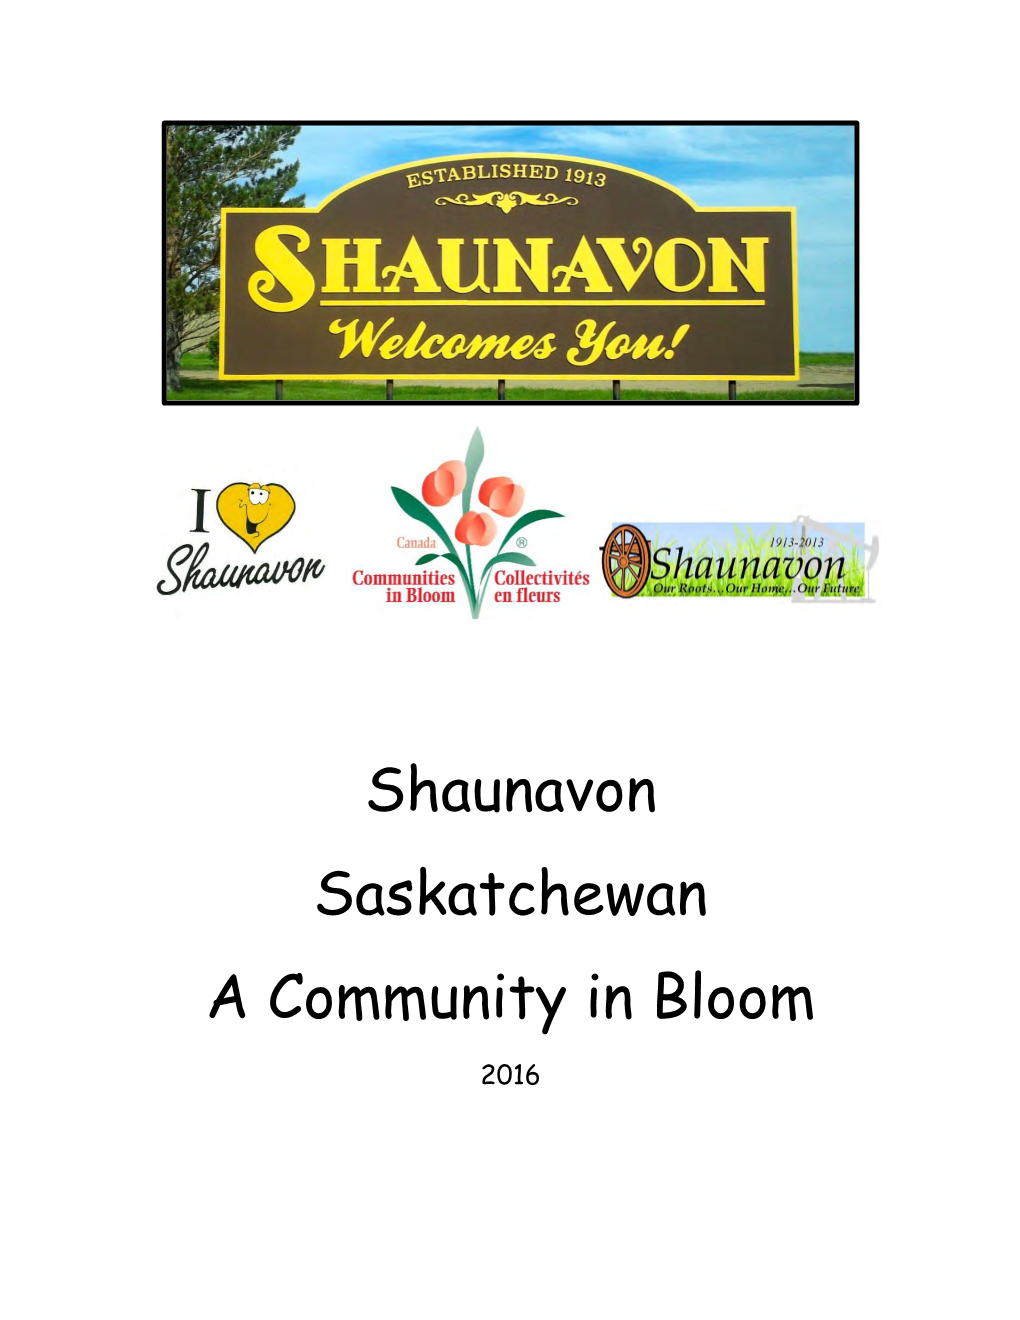 Shaunavon Saskatchewan a Community in Bloom